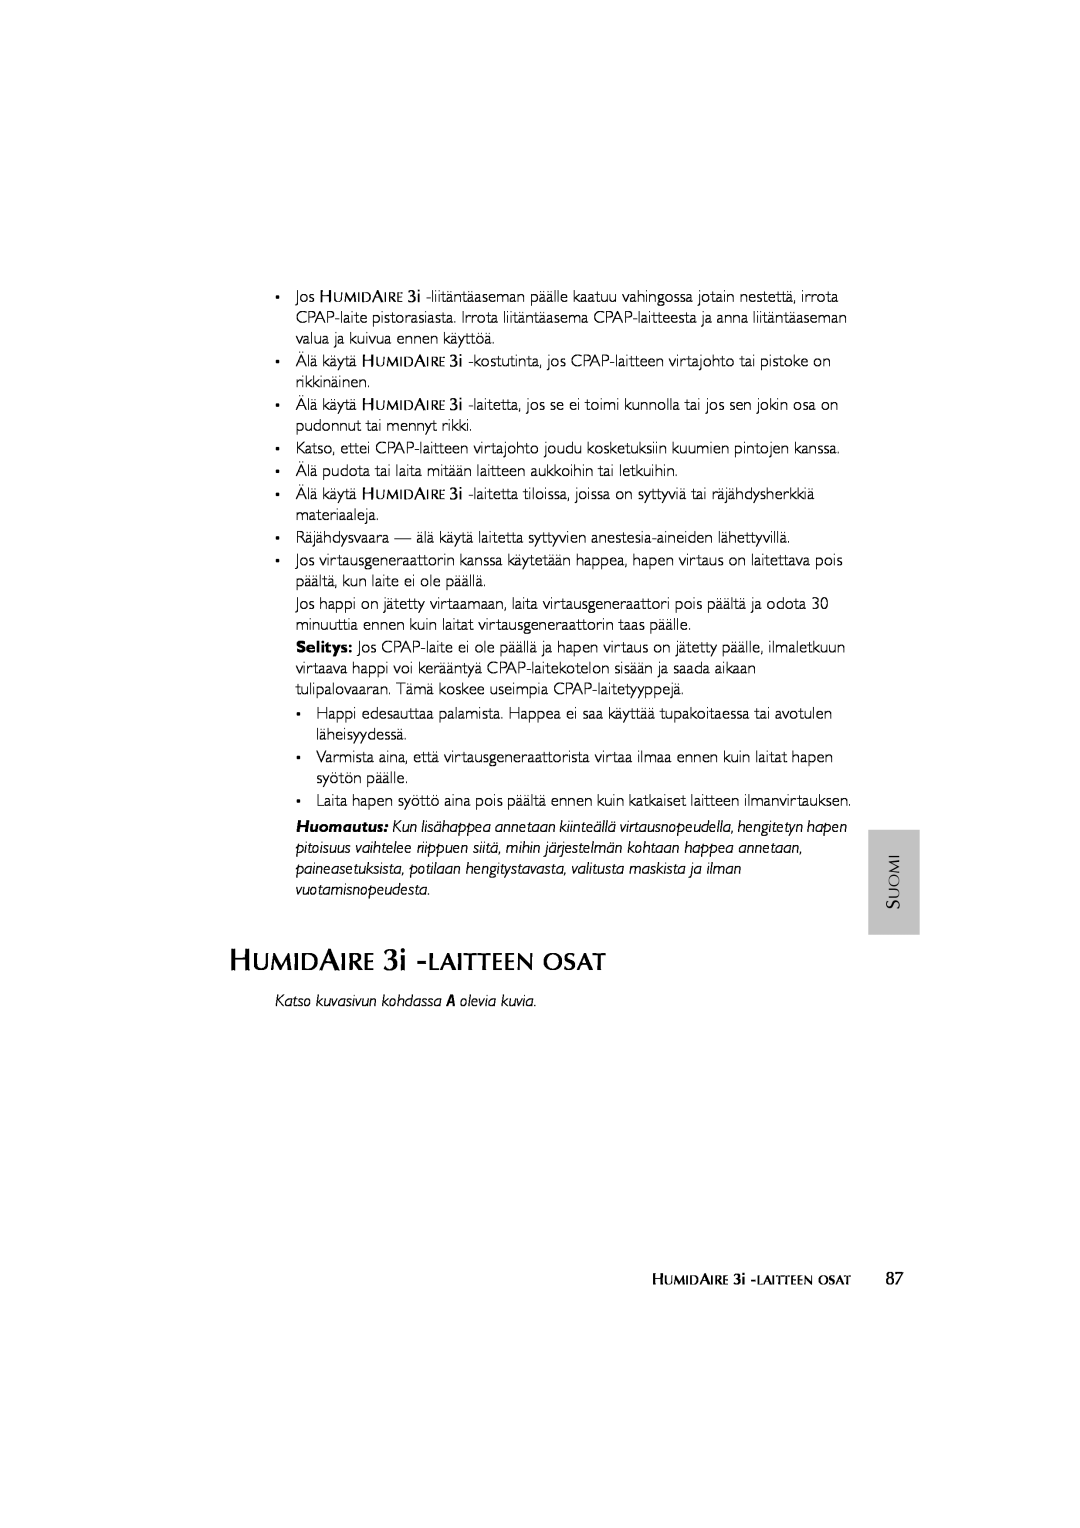 ResMed Humidifier user manual HUMIDAIRE 3i -LAITTEENOSAT, Katso kuvasivun kohdassa A olevia kuvia 